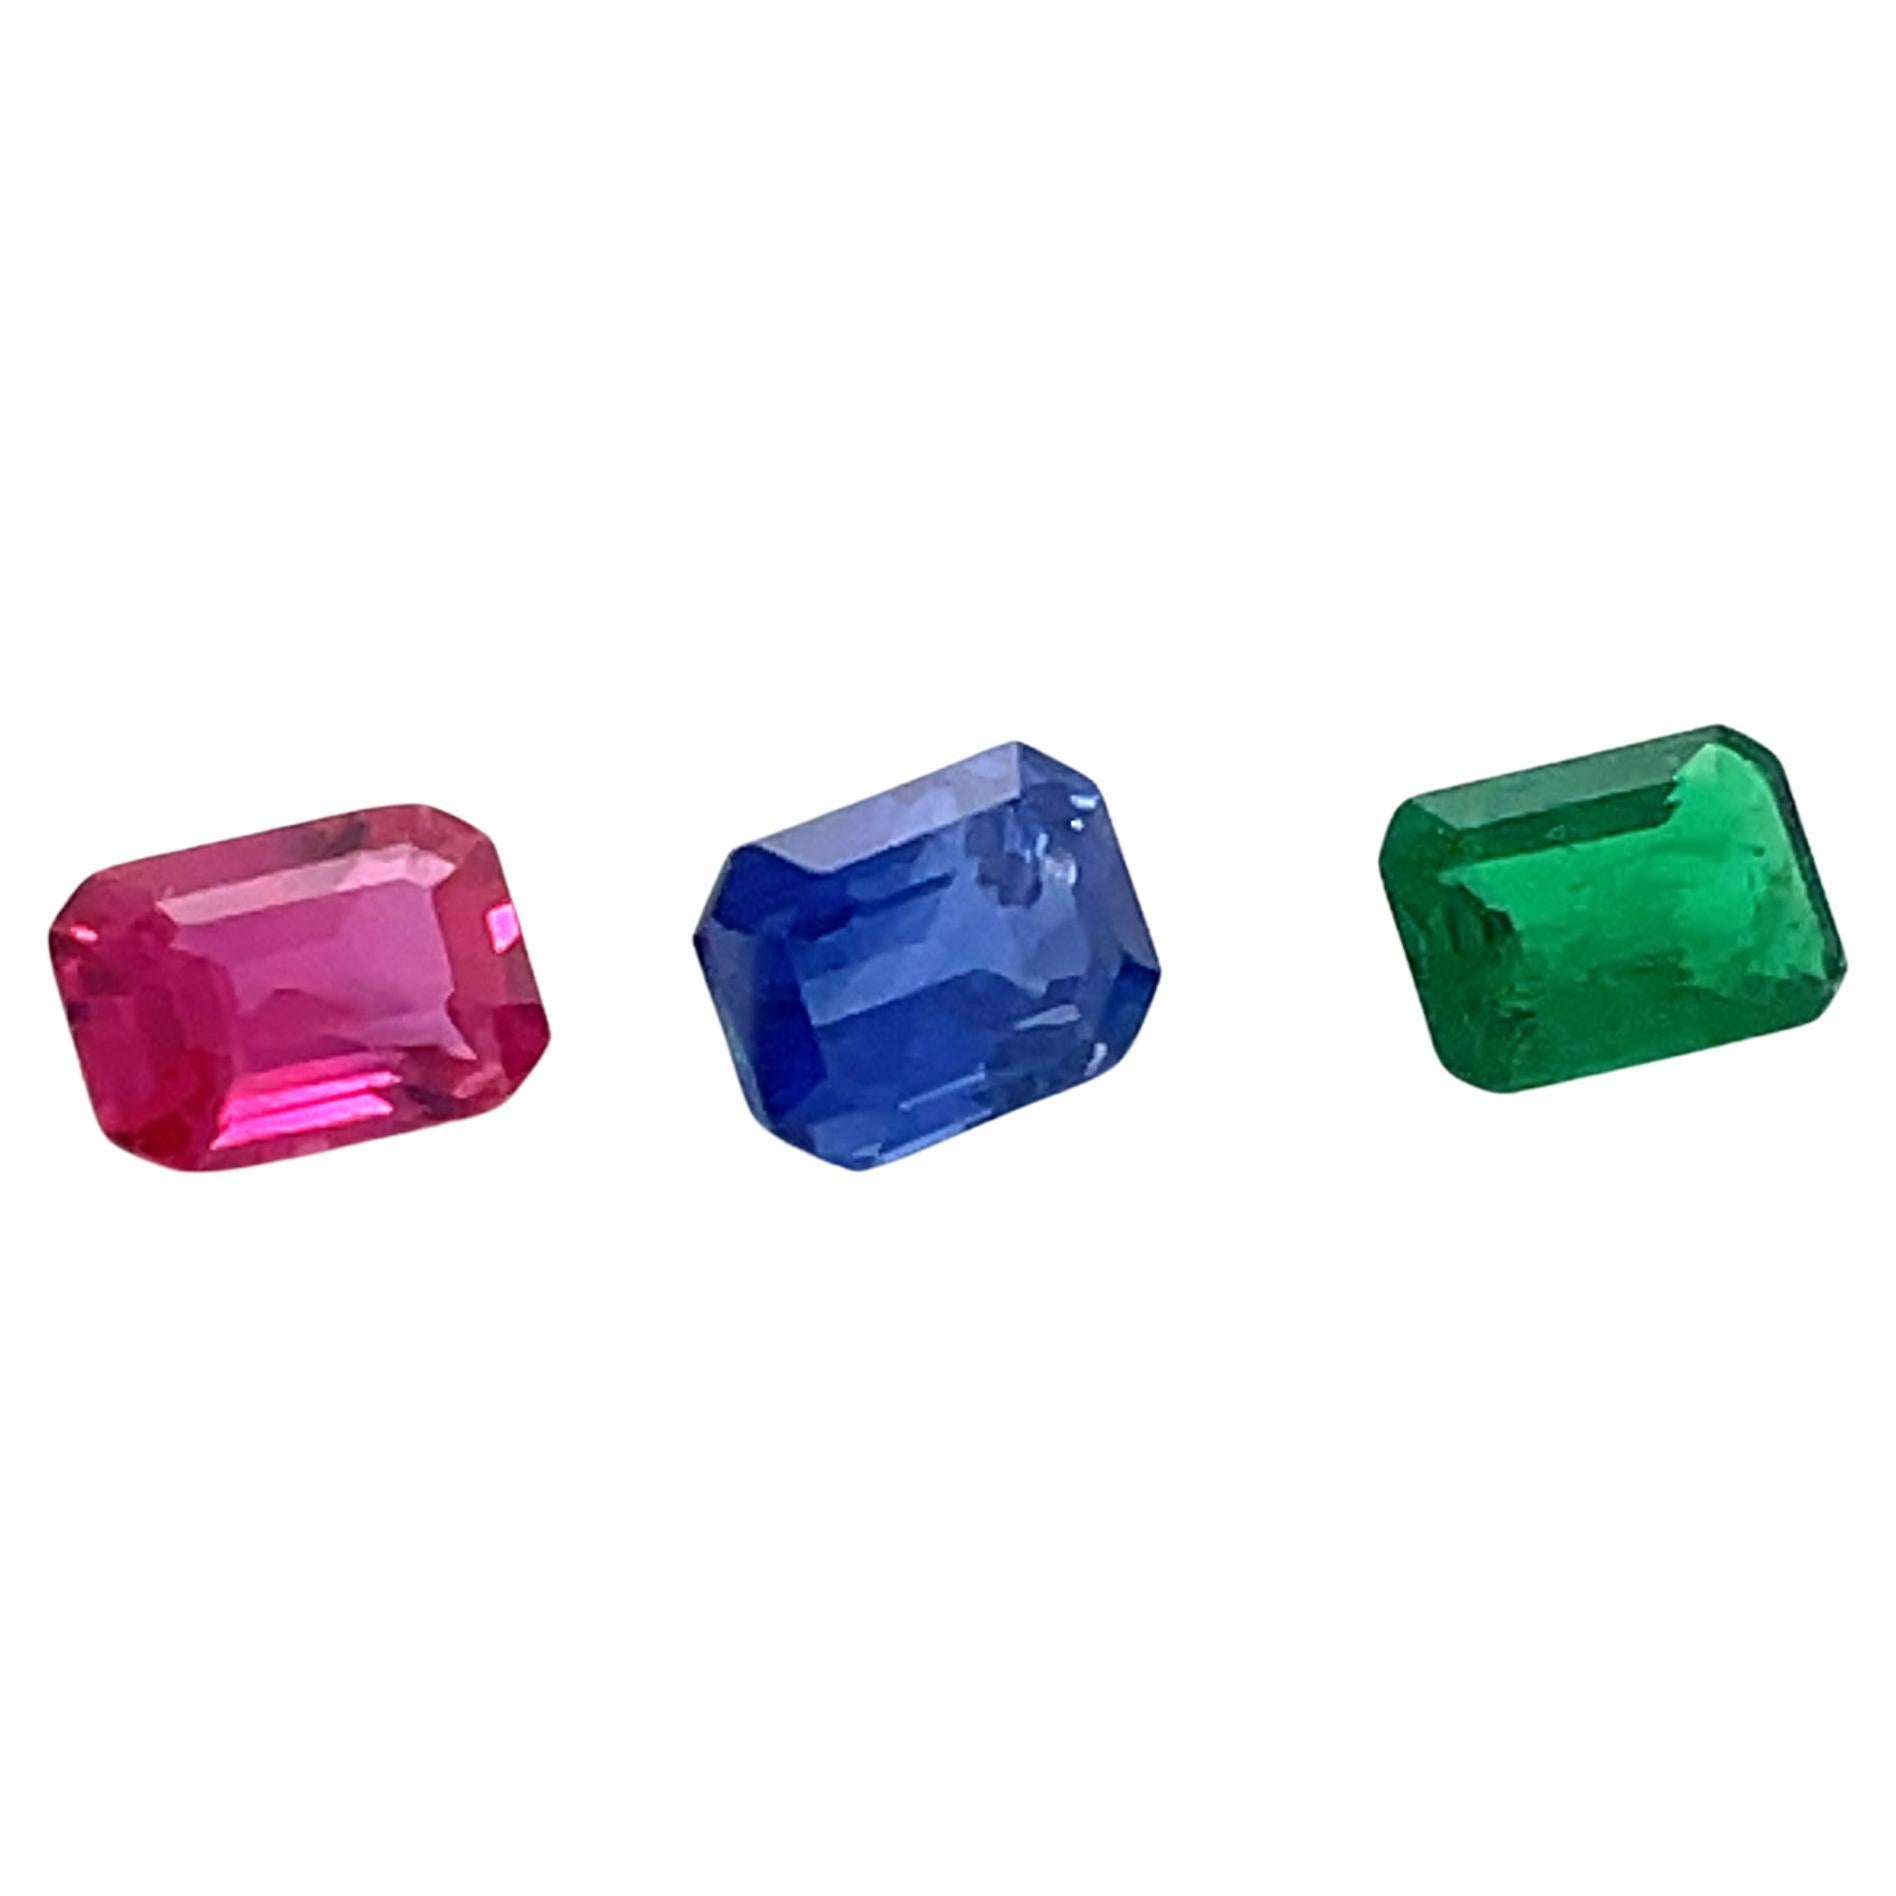 Rubis taille émeraude Cts 1,31 et saphir bleu Cts 2,16 et émeraude Cts 0,92  en vente